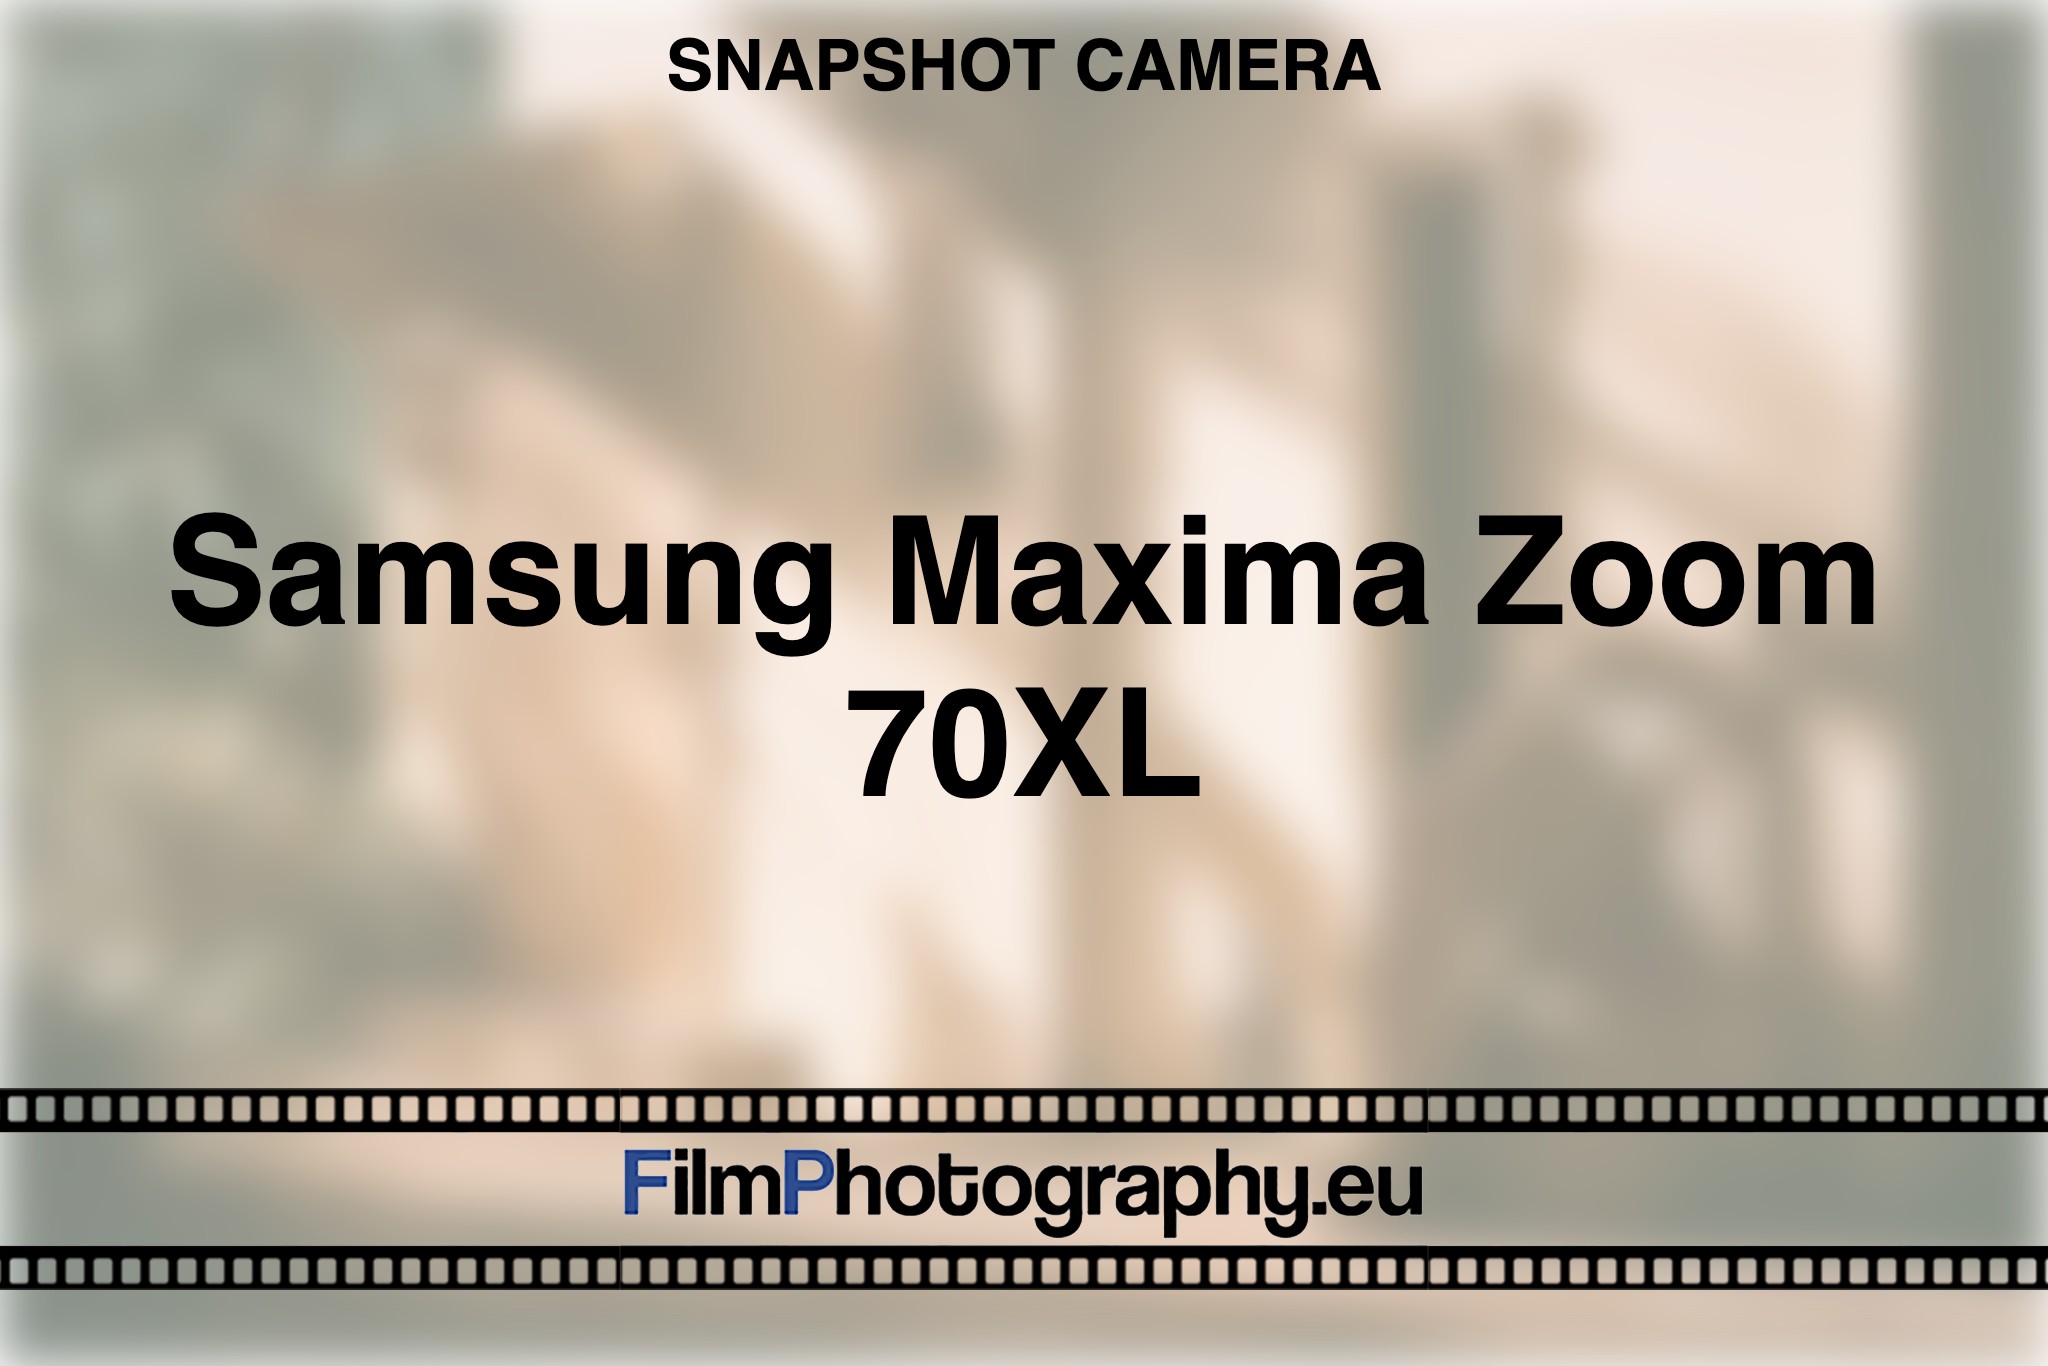 samsung-maxima-zoom-70xl-snapshot-camera-bnv